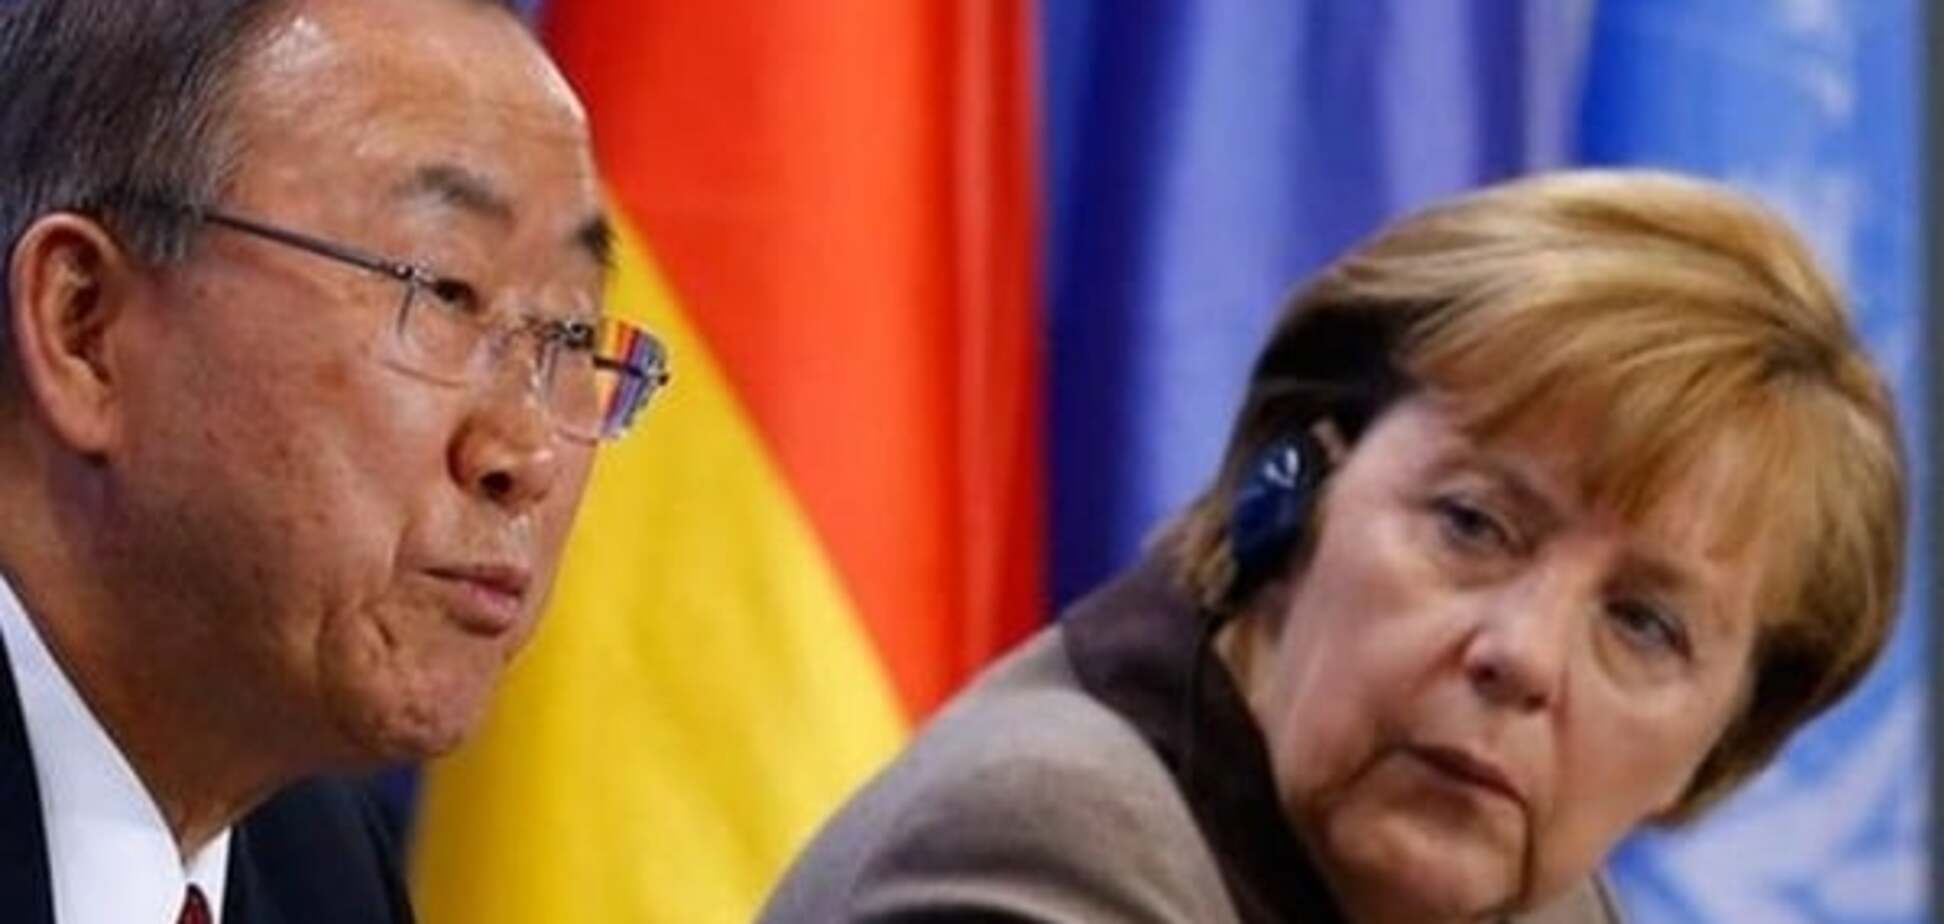 От Пан Ги Муна до Меркель: США прослушивали сверхсекретные сообщения мировых лидеров